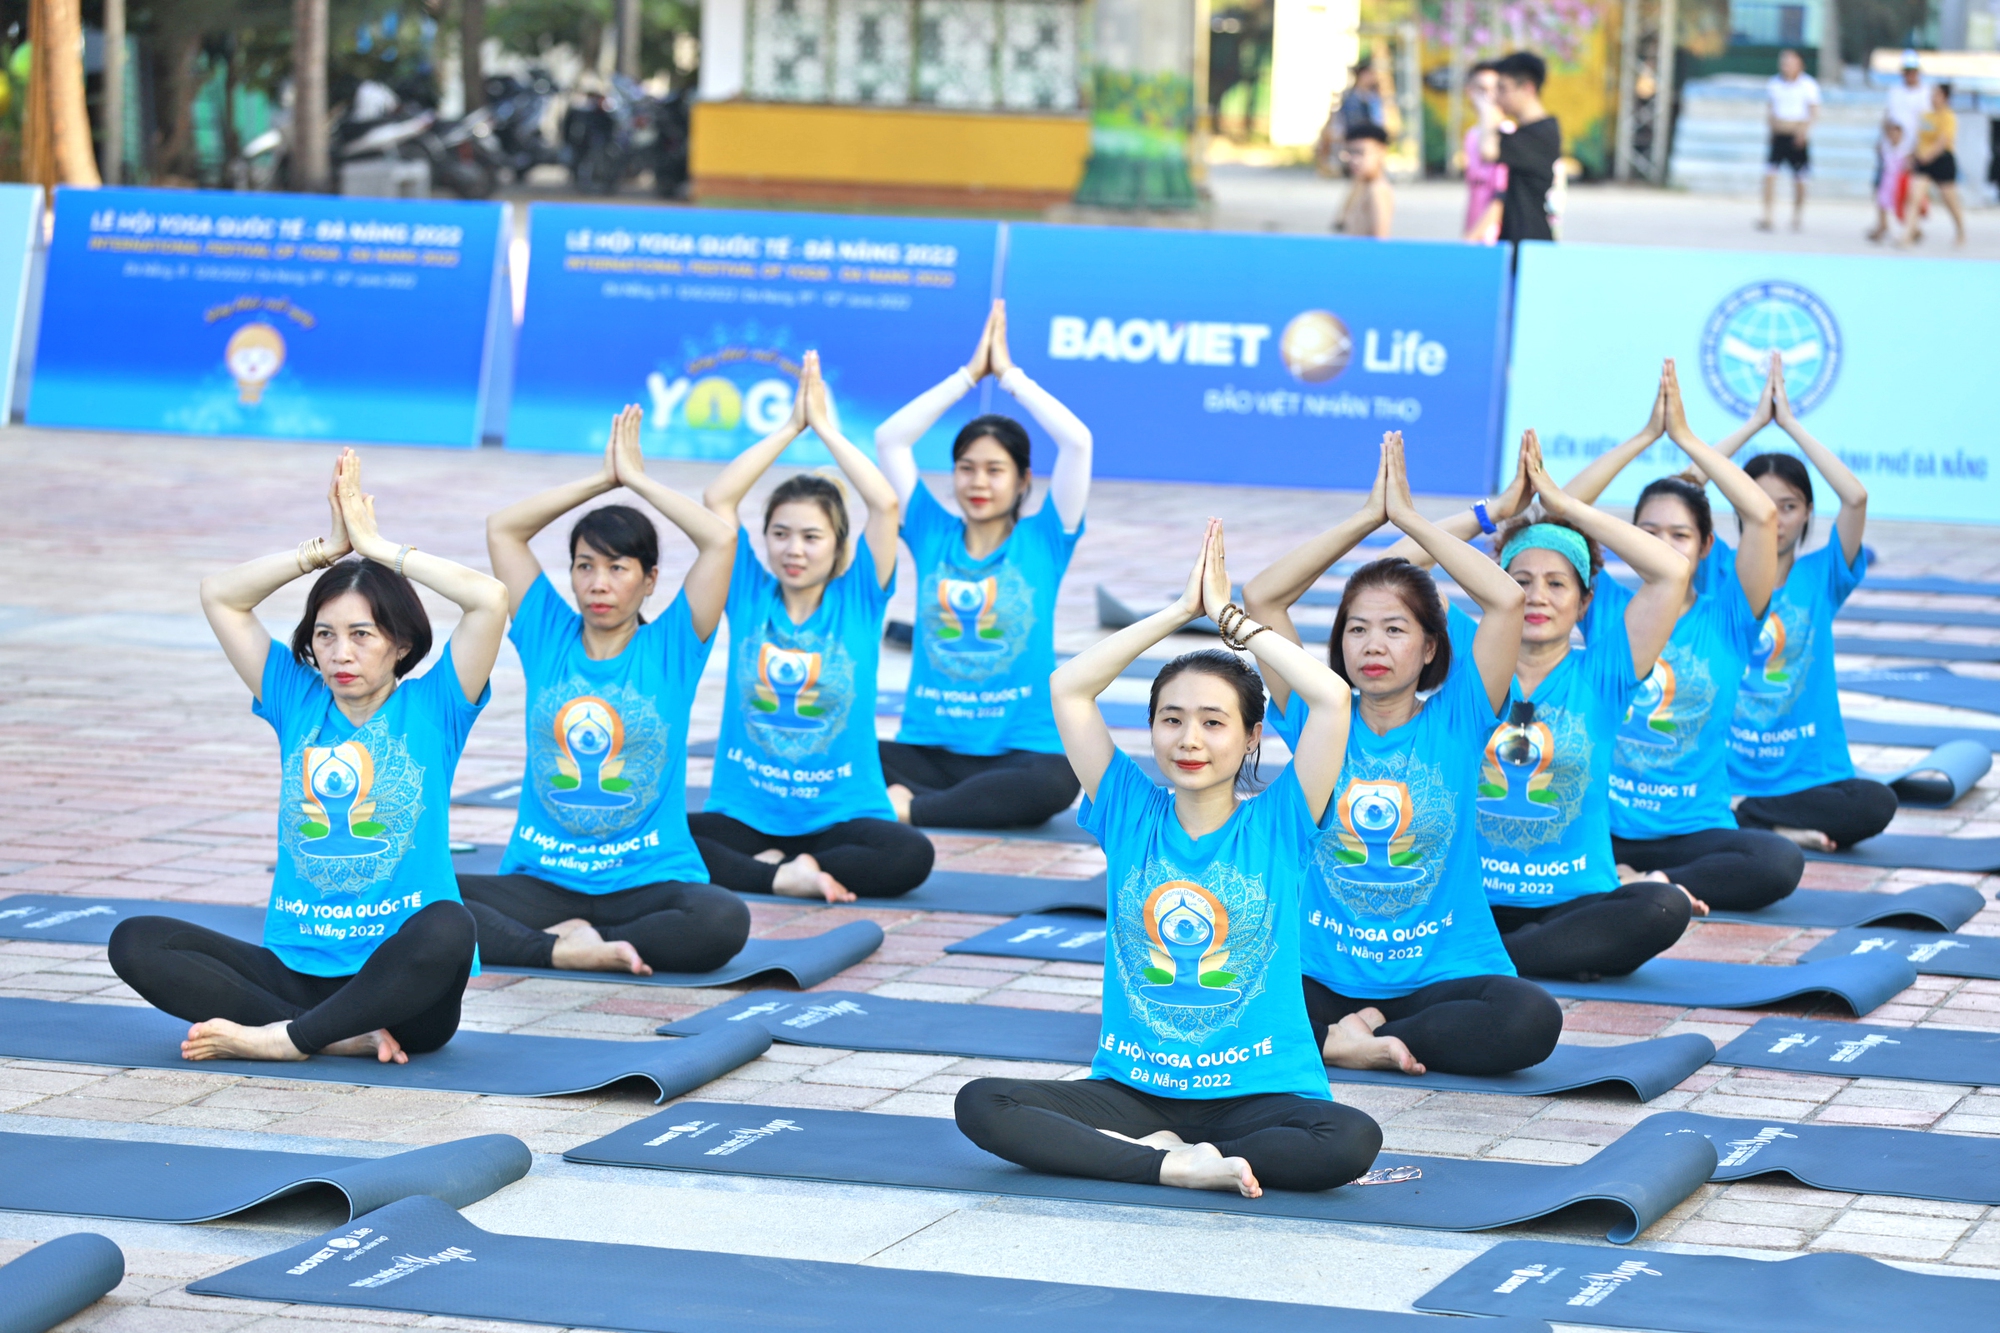 Mãn nhãn với màn đồng diễn Yoga của hơn 1.500 người tại Đà Nẵng  - Ảnh 7.